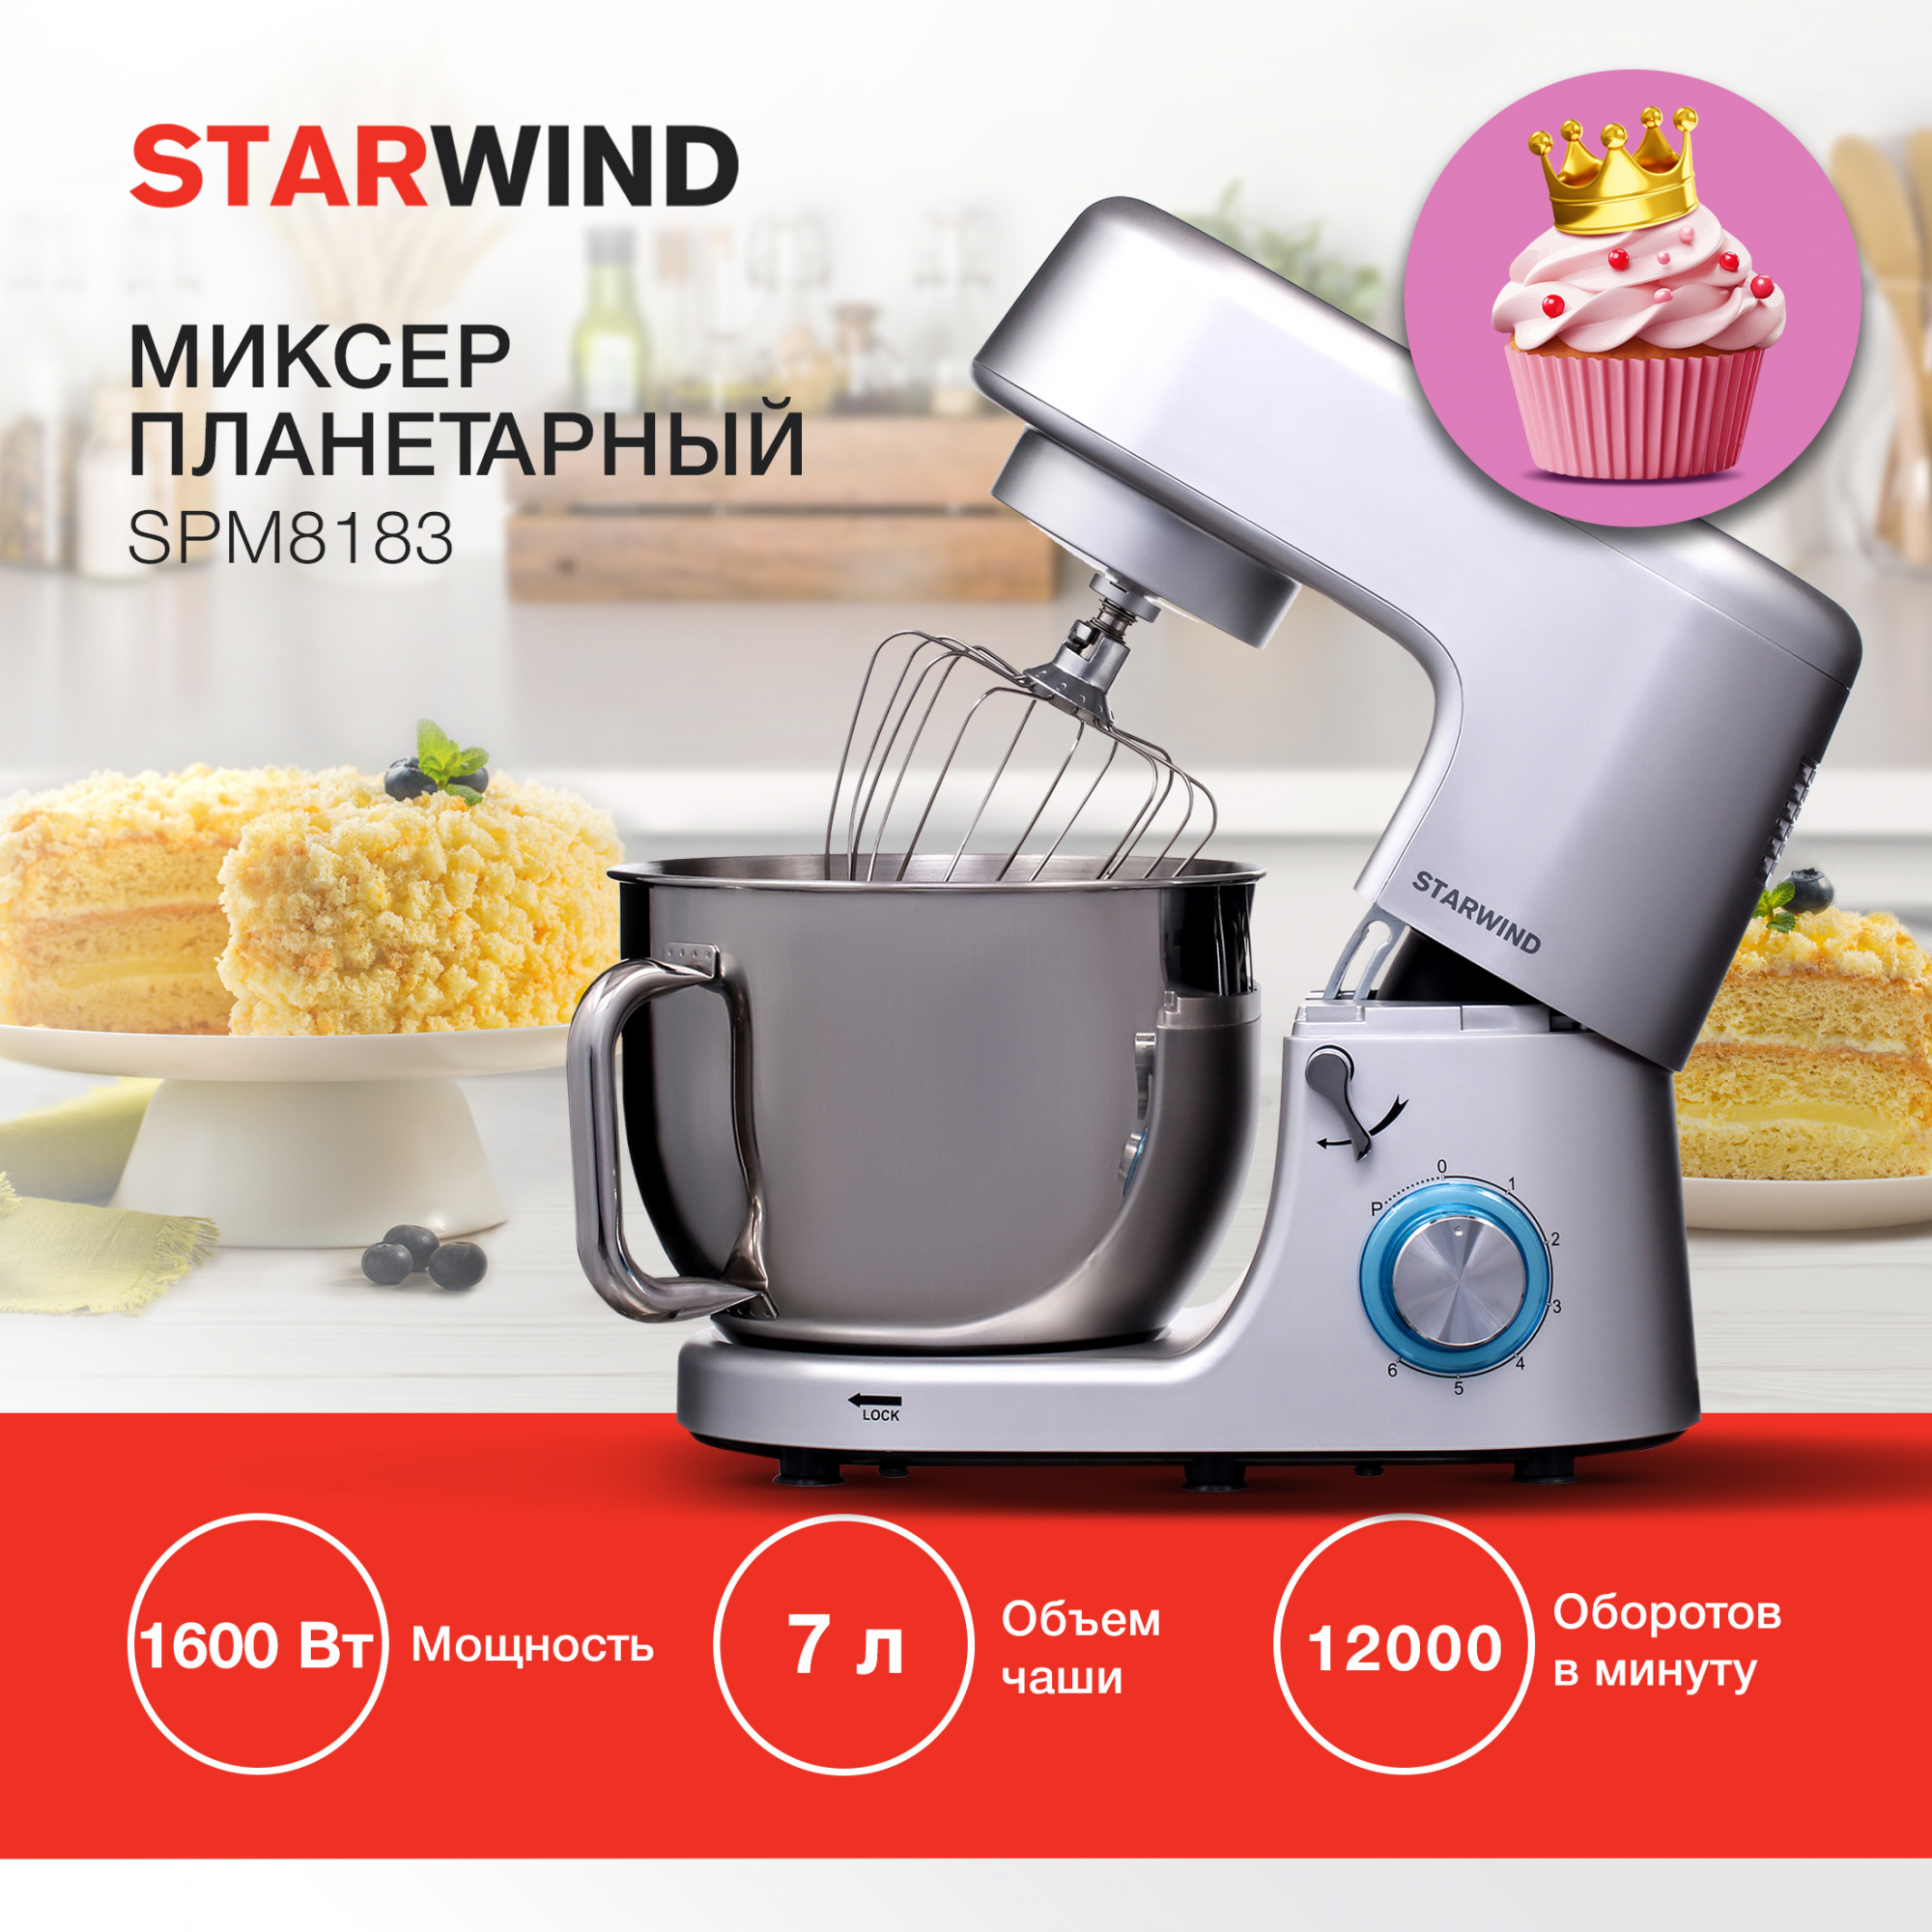 Миксер планетарный Starwind SPM8183 серебристый от магазина Старвинд